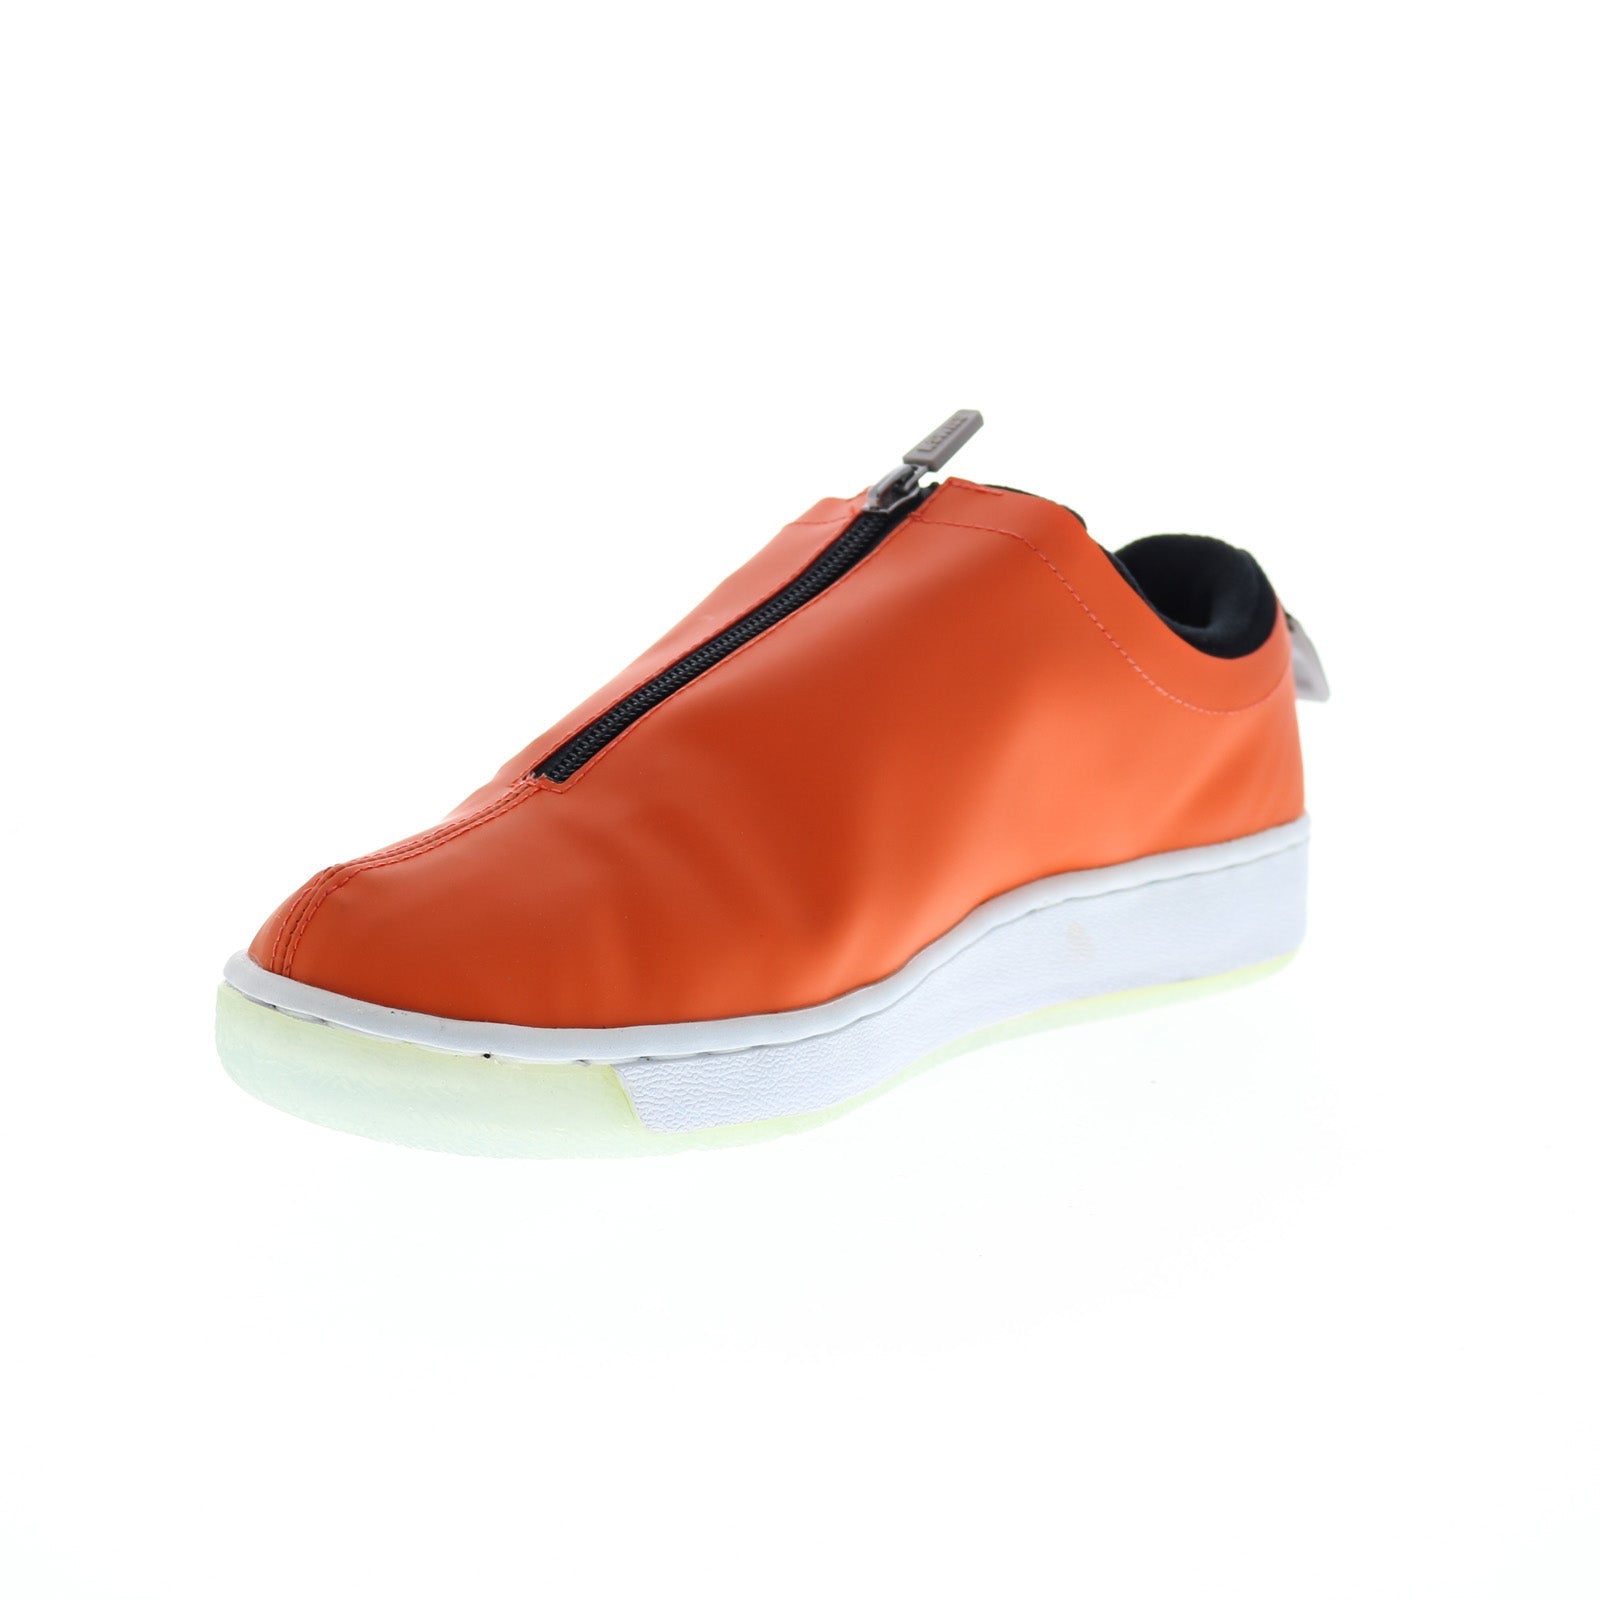 Onbepaald Melancholie Besluit K-Swiss Classic 2000 X Breaking Bad Mens Orange Lifestyle Sneakers Sho -  Ruze Shoes